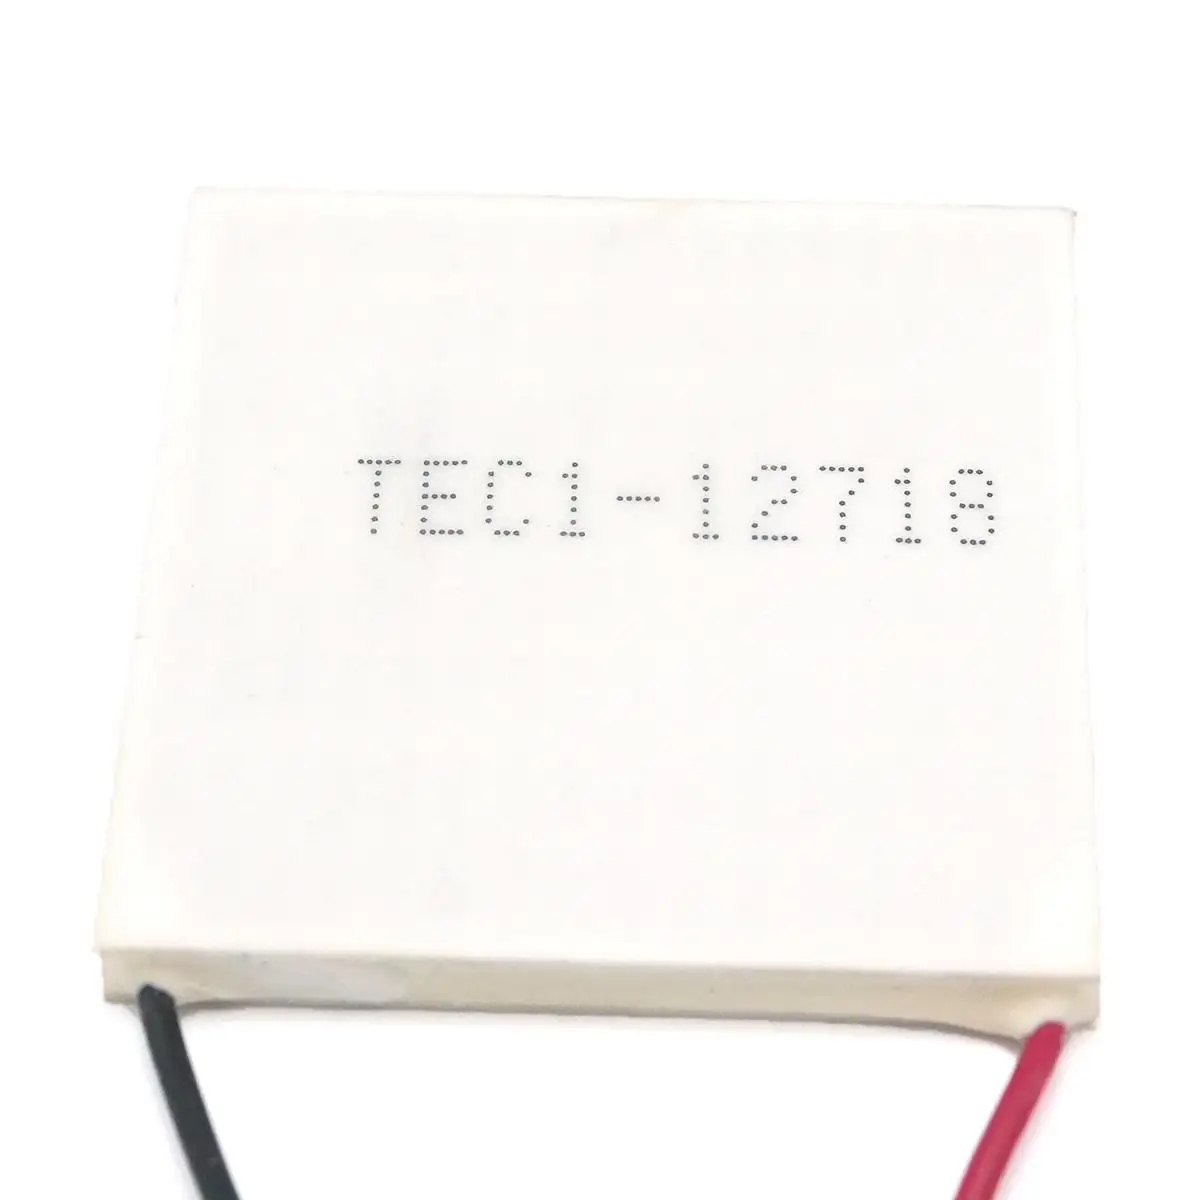 TEC1-12718 50x50 мм 12 В 18 А теплоотвод Термоэлектрический охладитель Пельтье